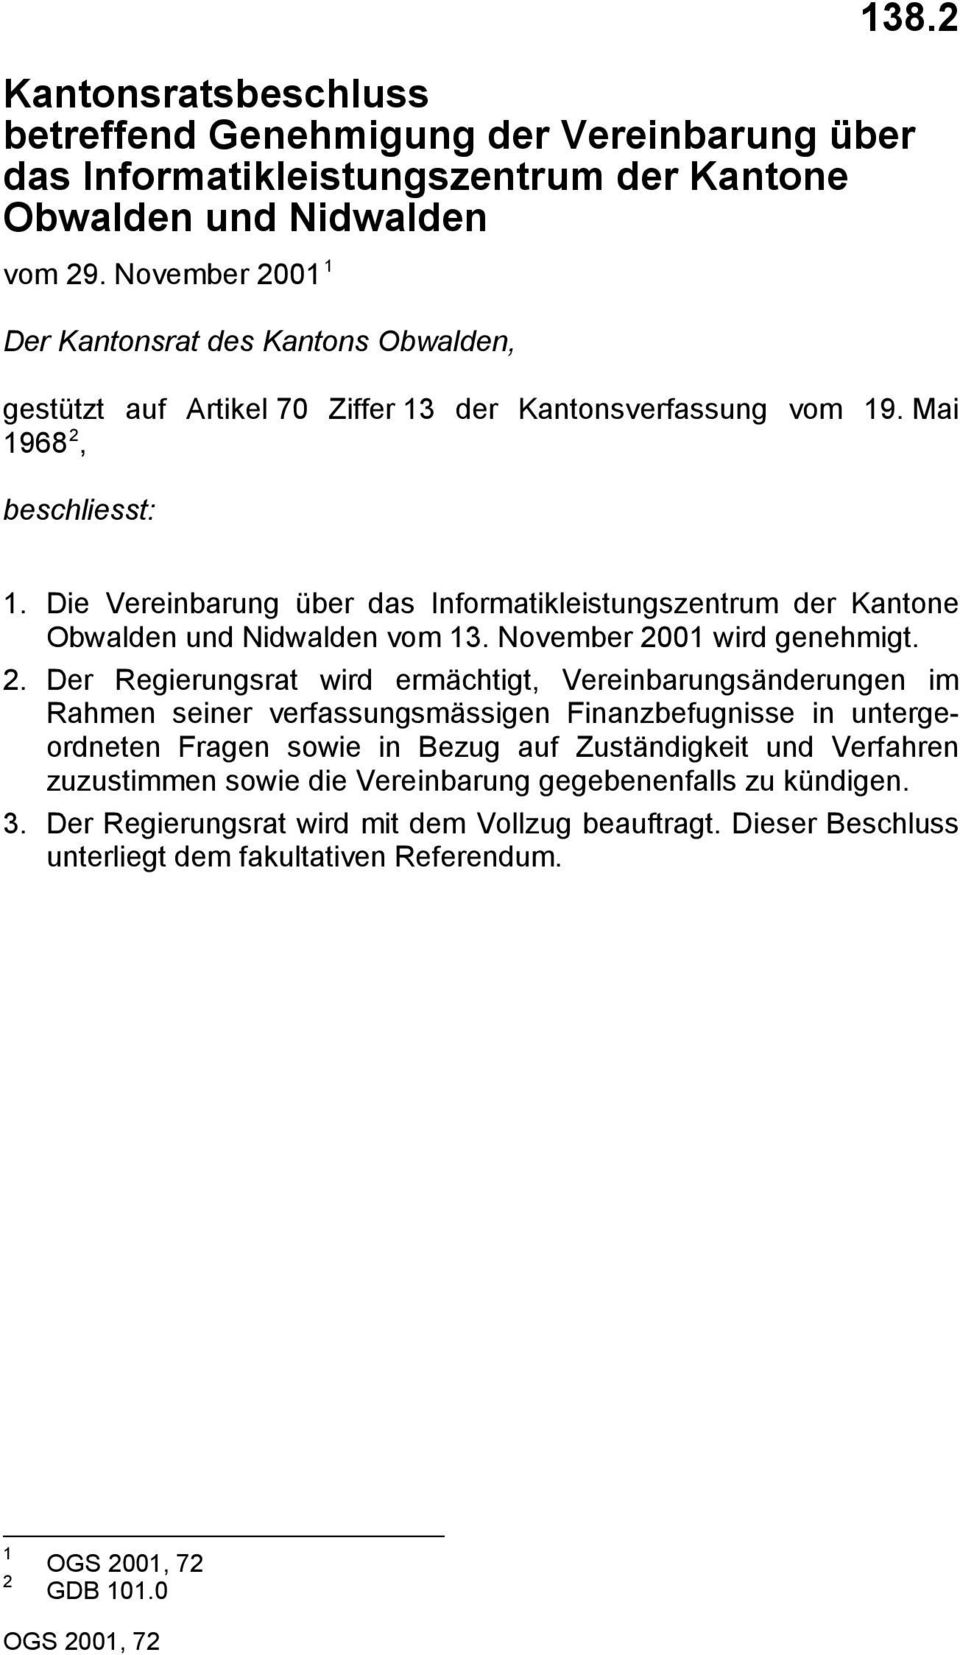 Die Vereinbarung über das Informatikleistungszentrum der Kantone Obwalden und Nidwalden vom. November 00 wird genehmigt.